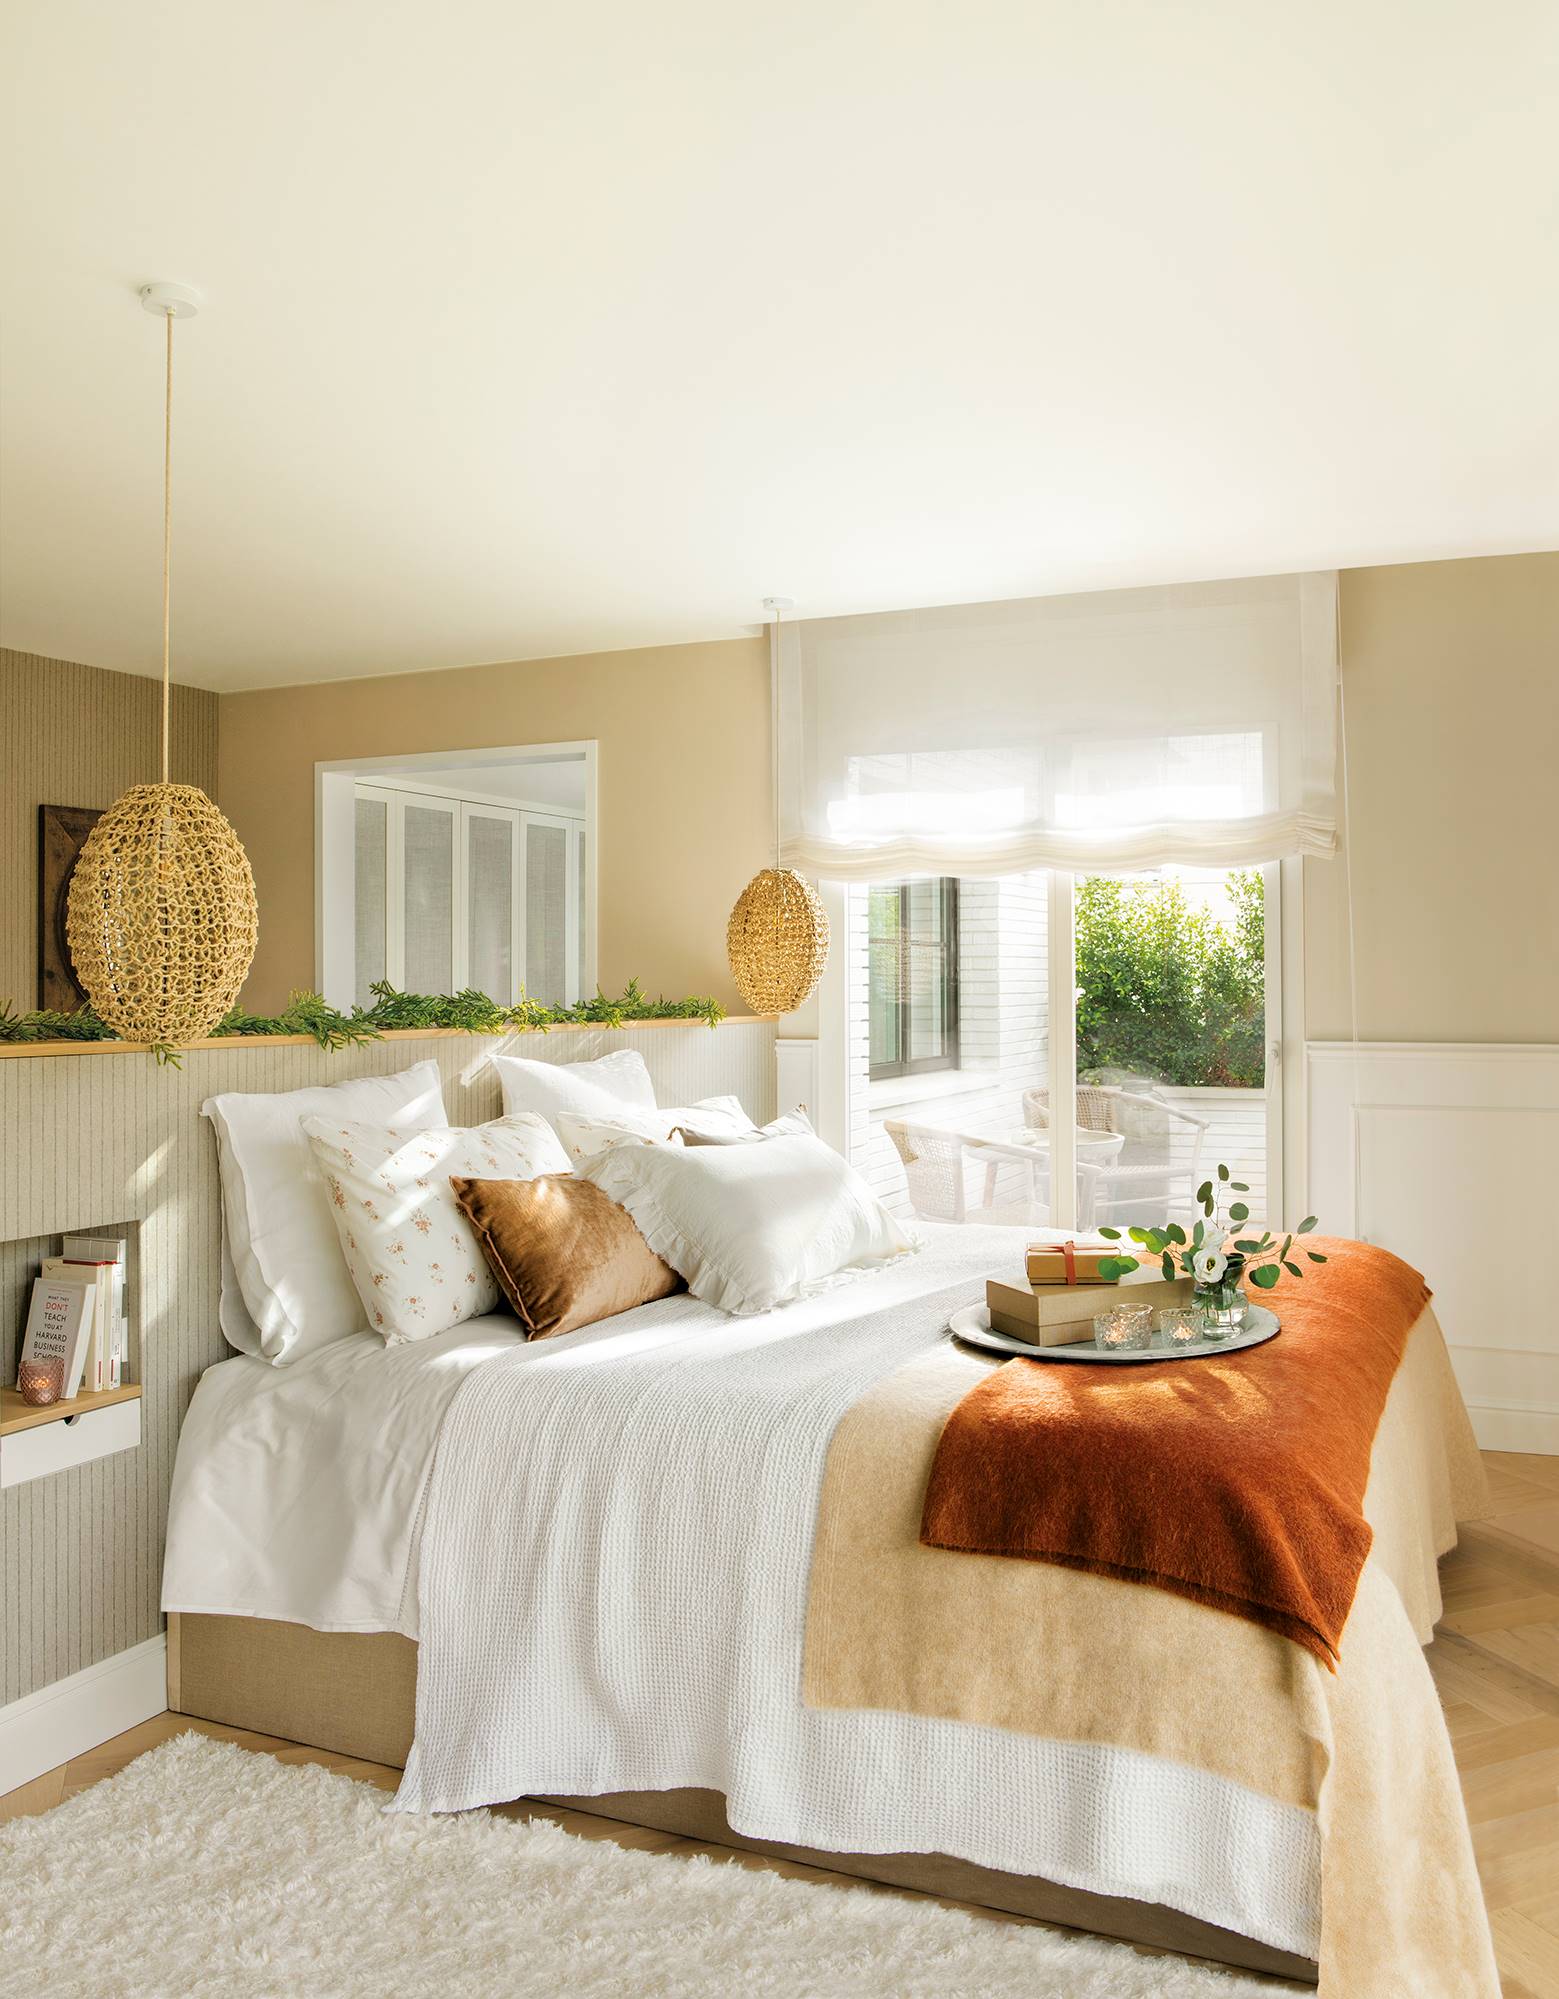 Dormitorio con cabecero en forma de murete revestido de papel pintado a rayas y lámparas colgantes de fibra.